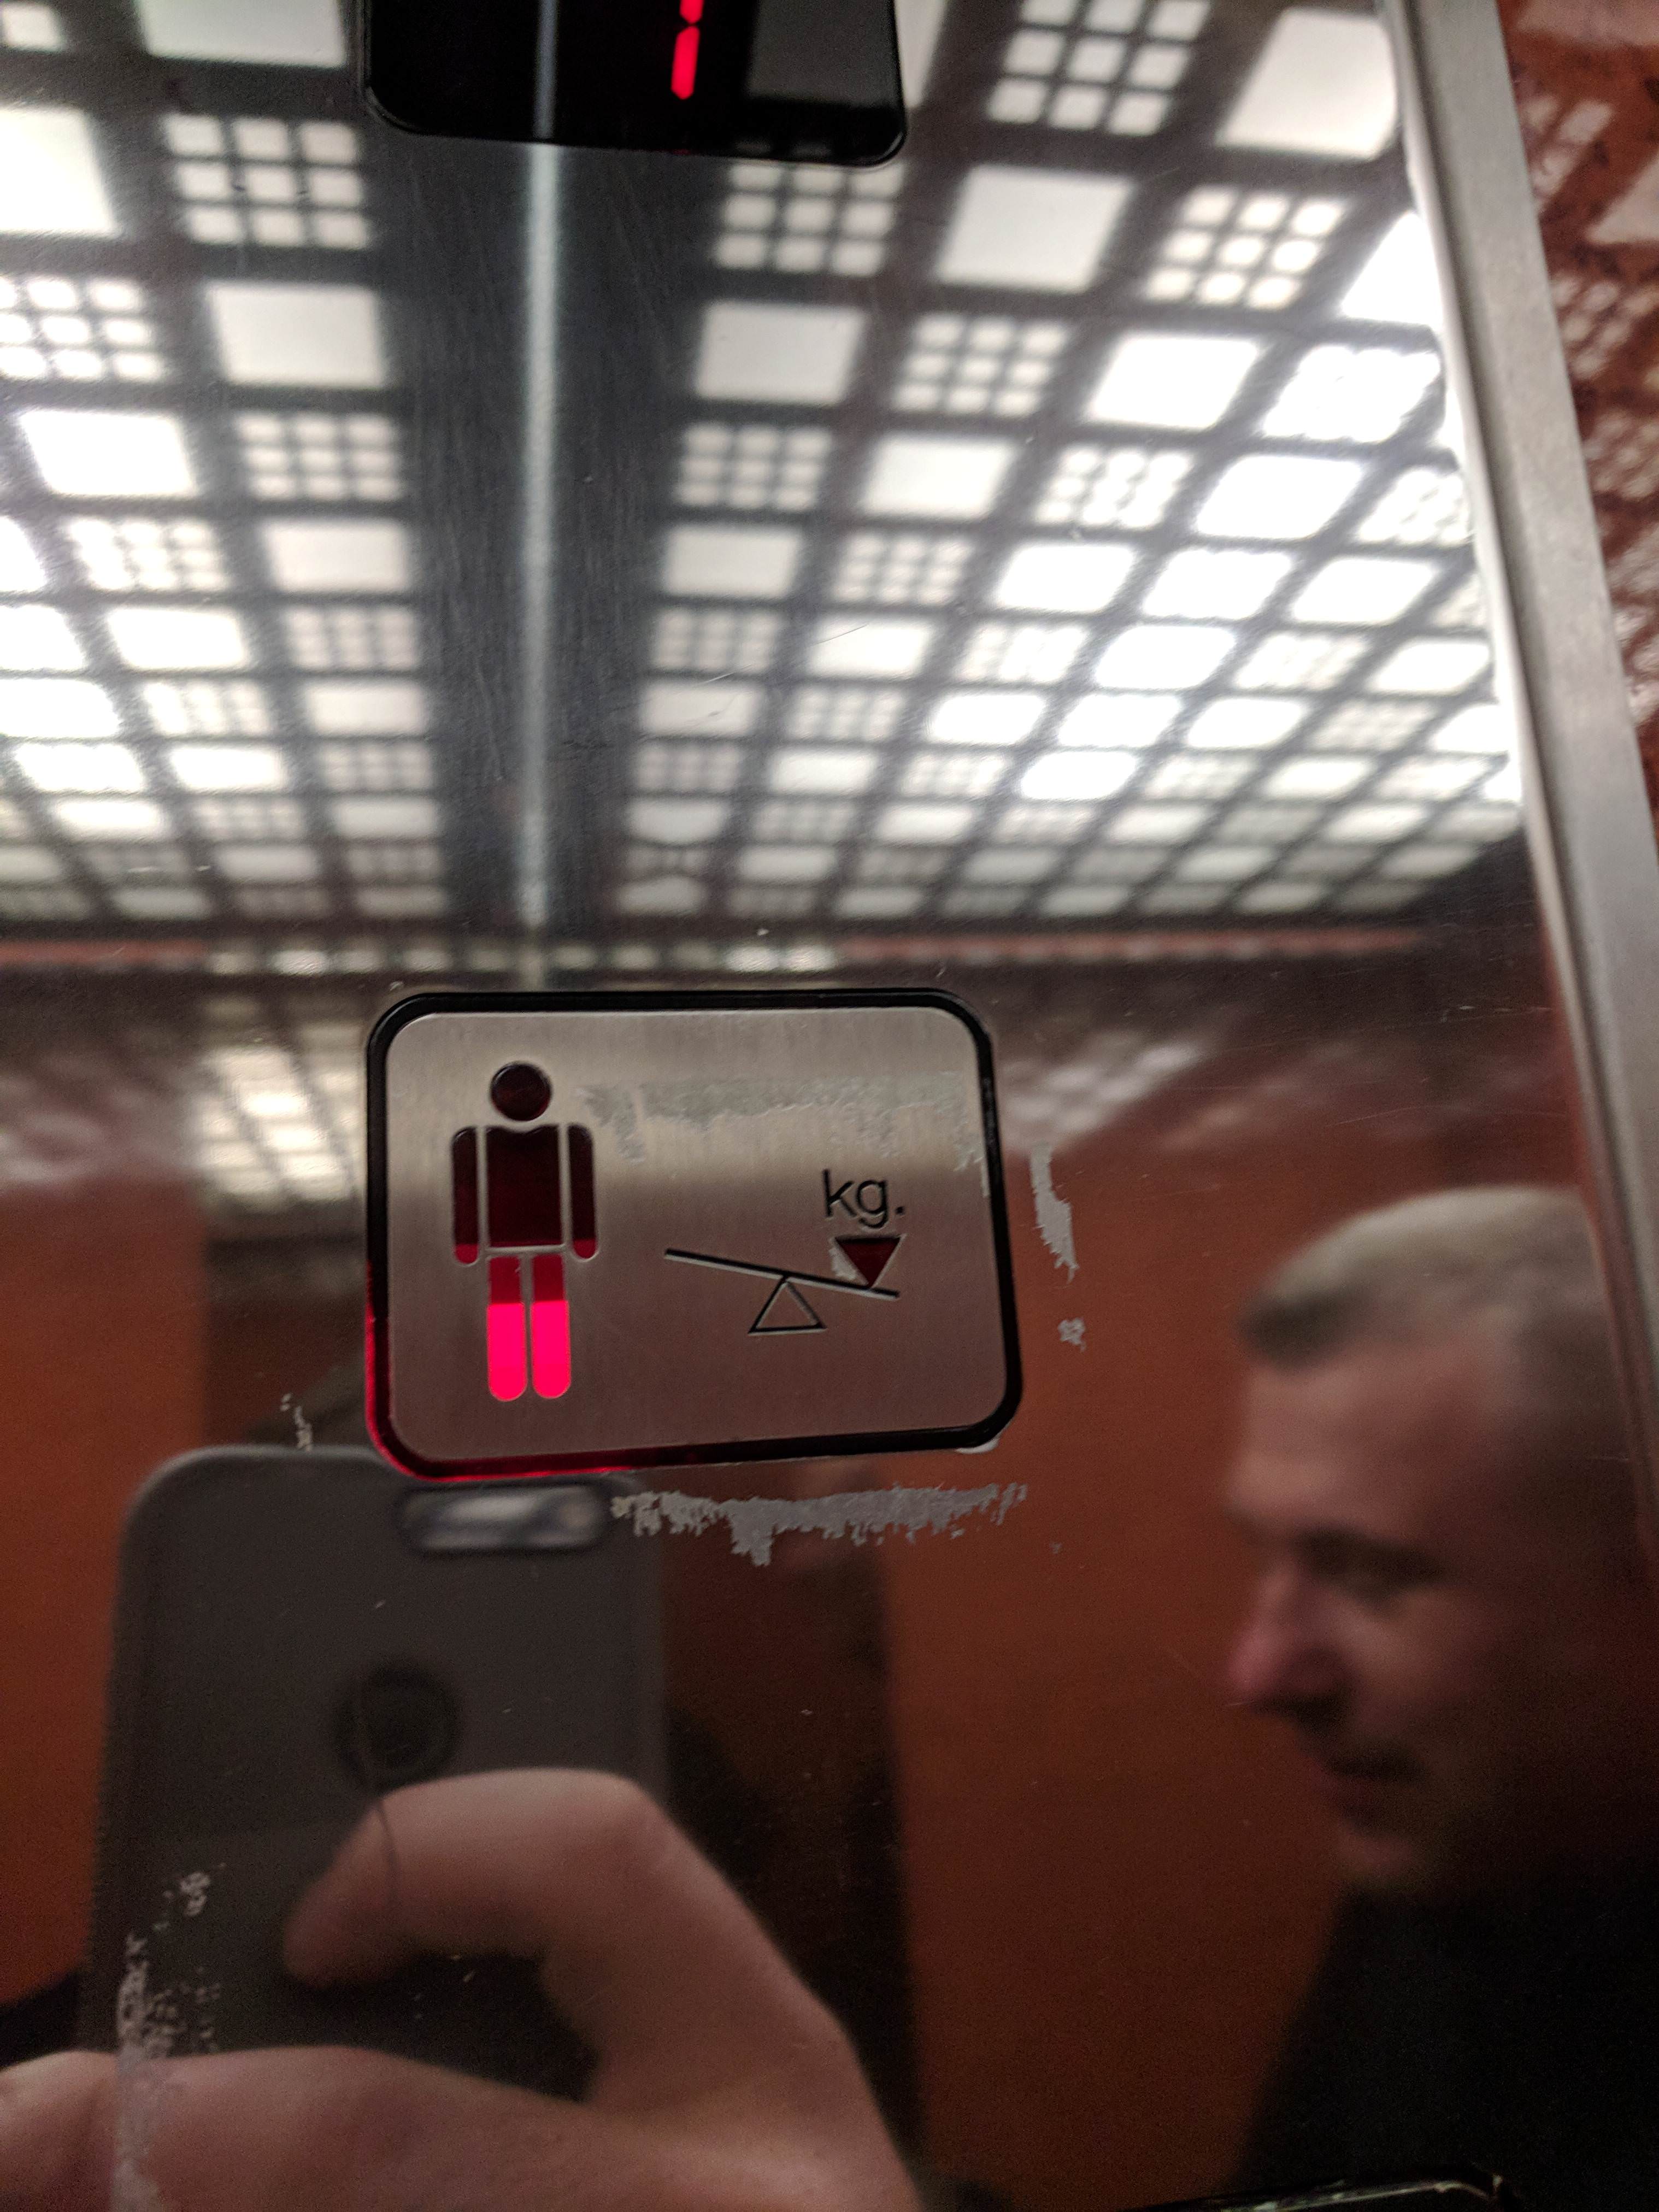 indicateur de poids dans un ascenseur